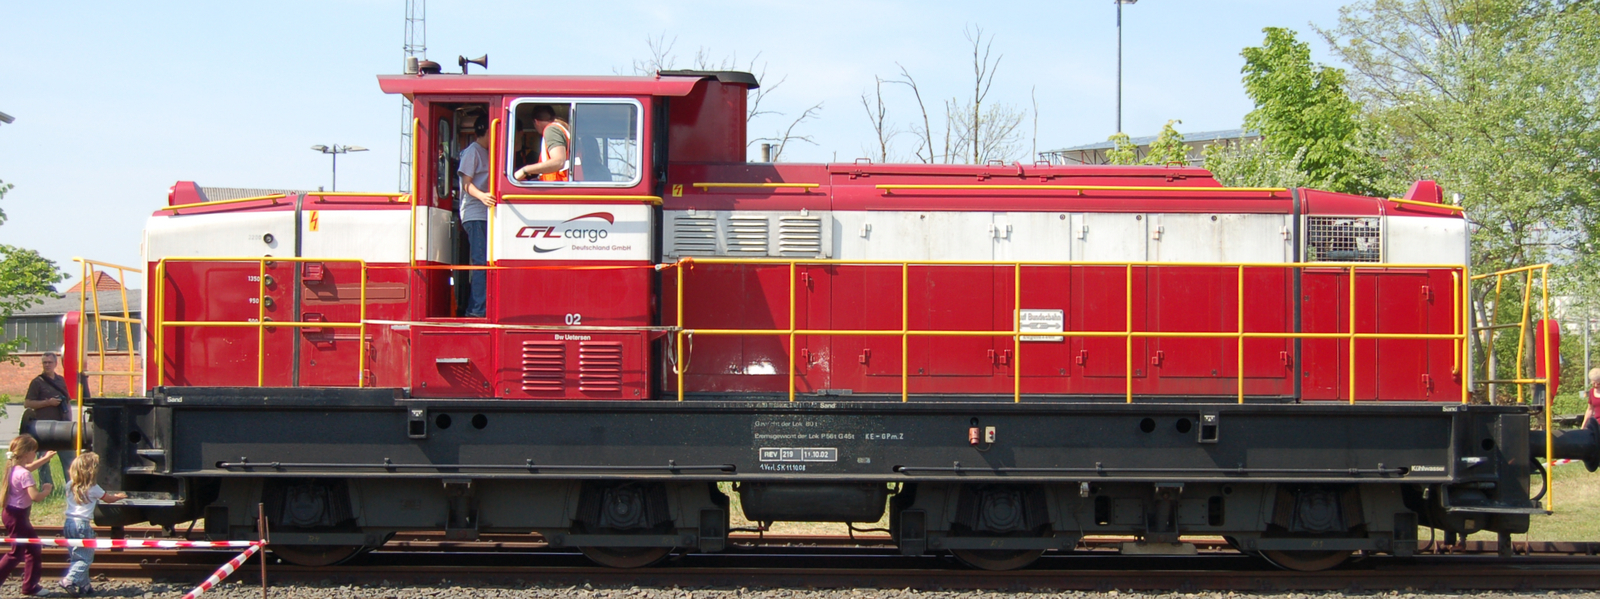 G 1100 of CFL Cargo in April 2009 in Uetersen